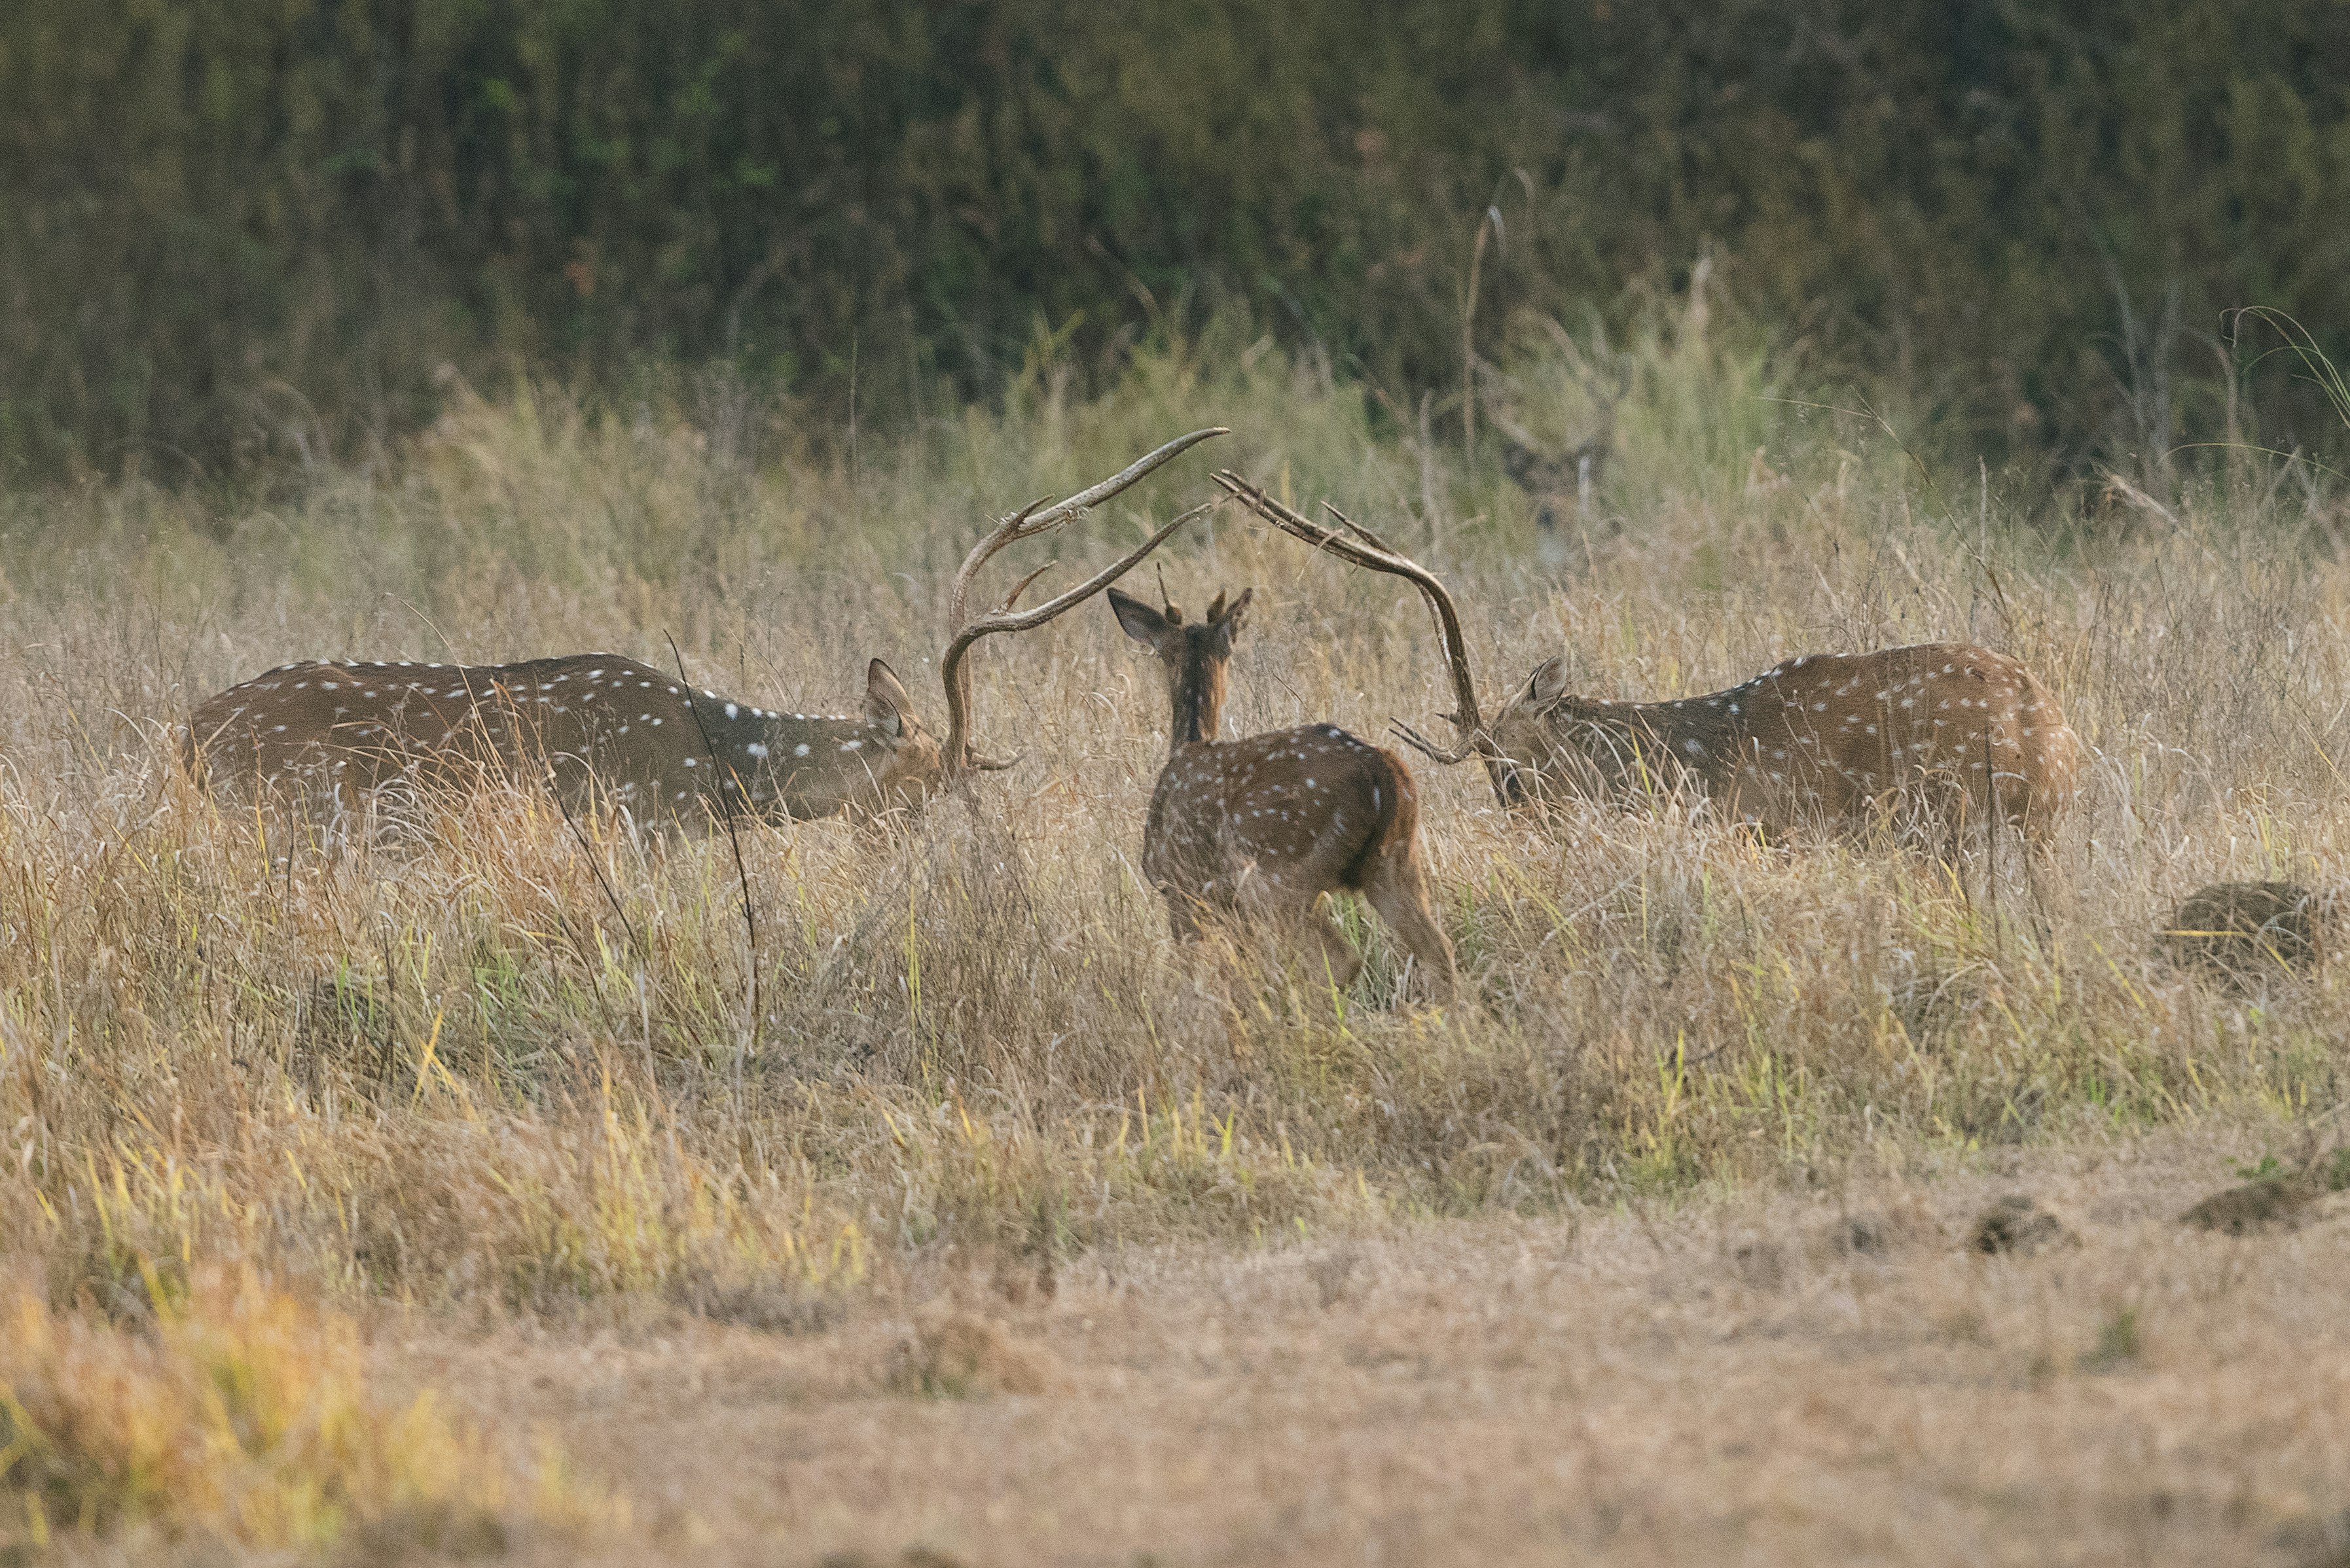 herd of deer standing on grass field